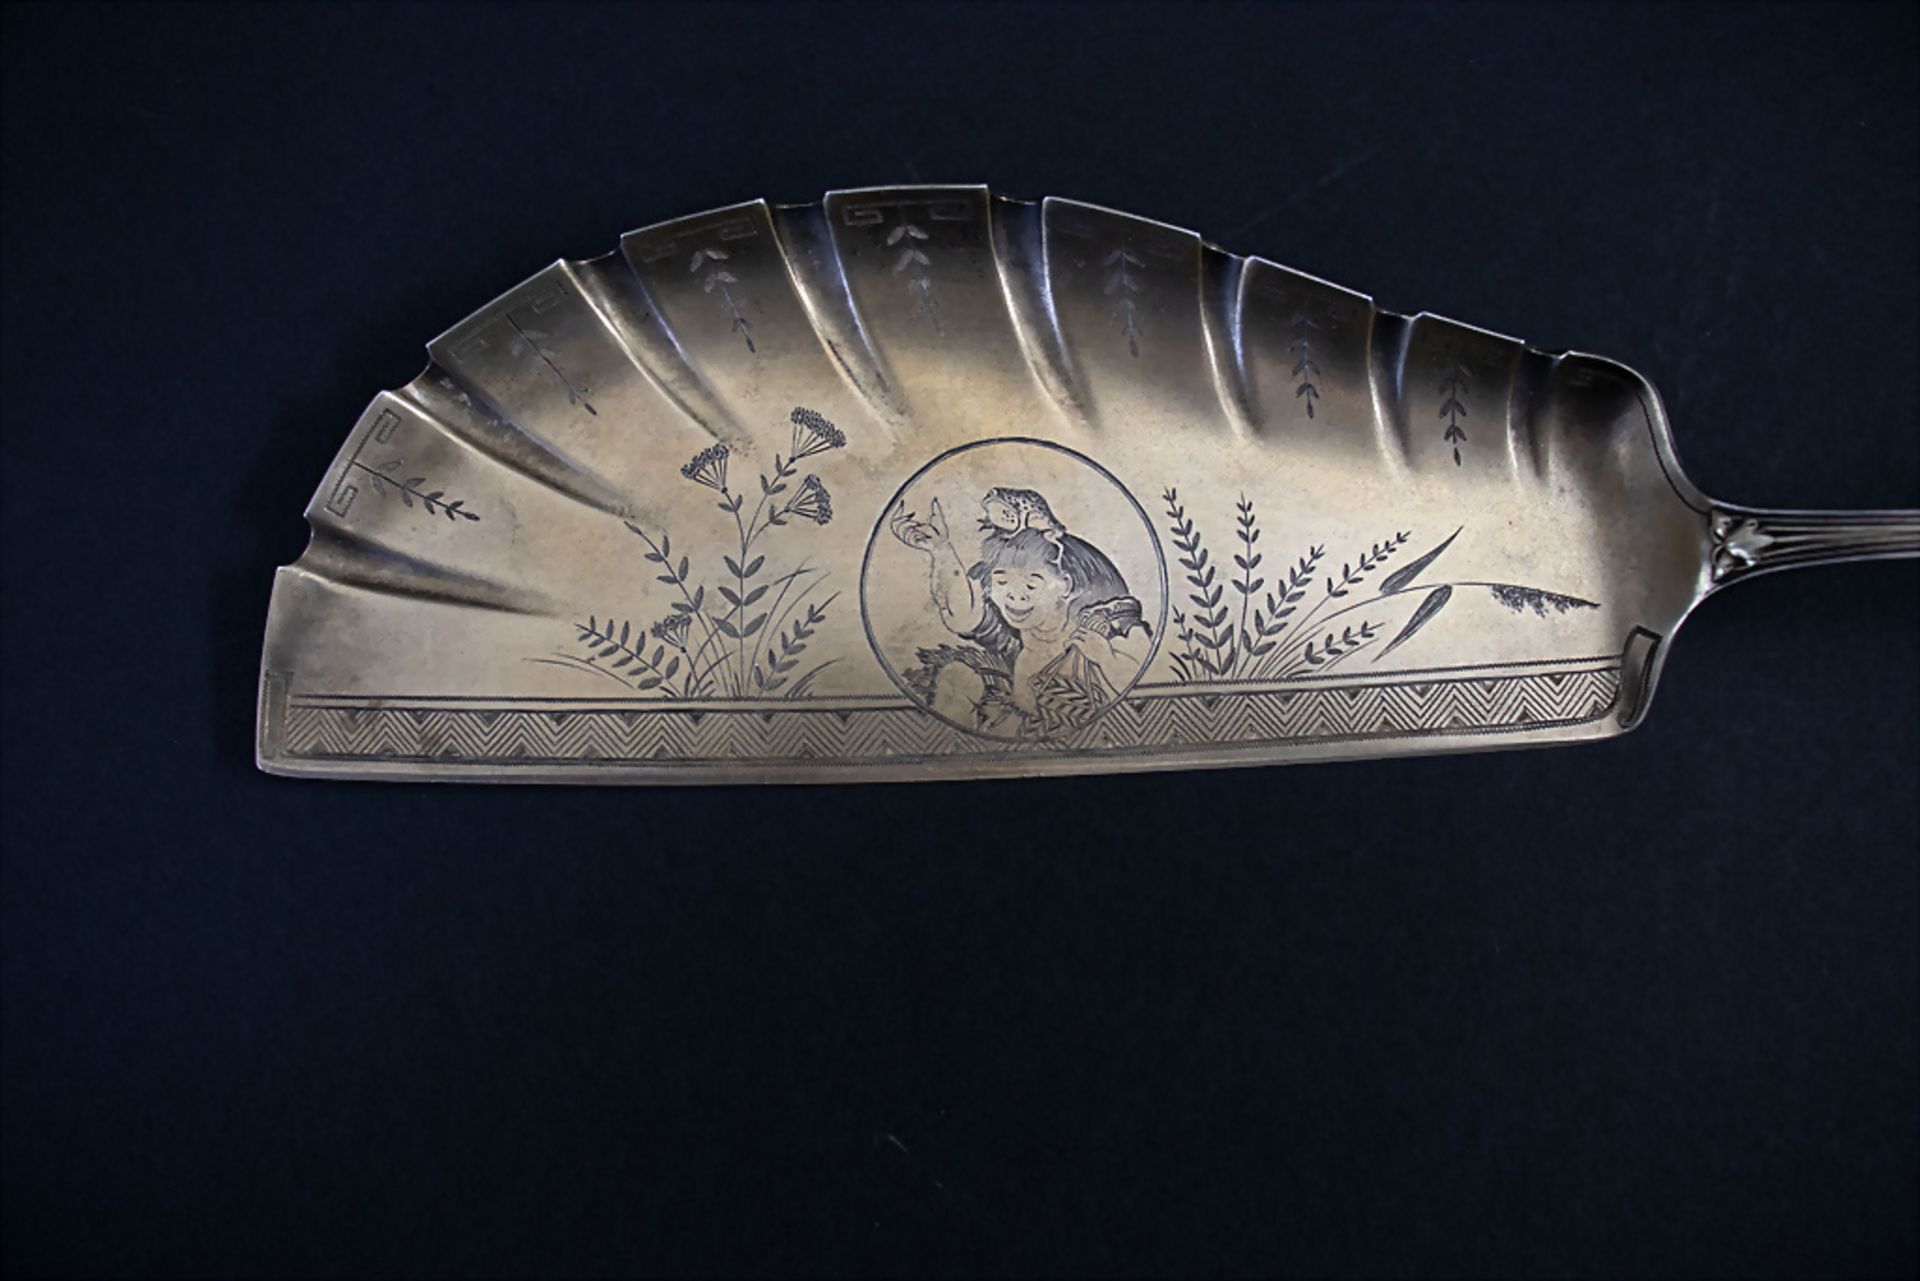 3 Teile Vorlegebesteck / 3 pieces of silver serving cutlery, Tiffany, um 1890 - Bild 4 aus 10